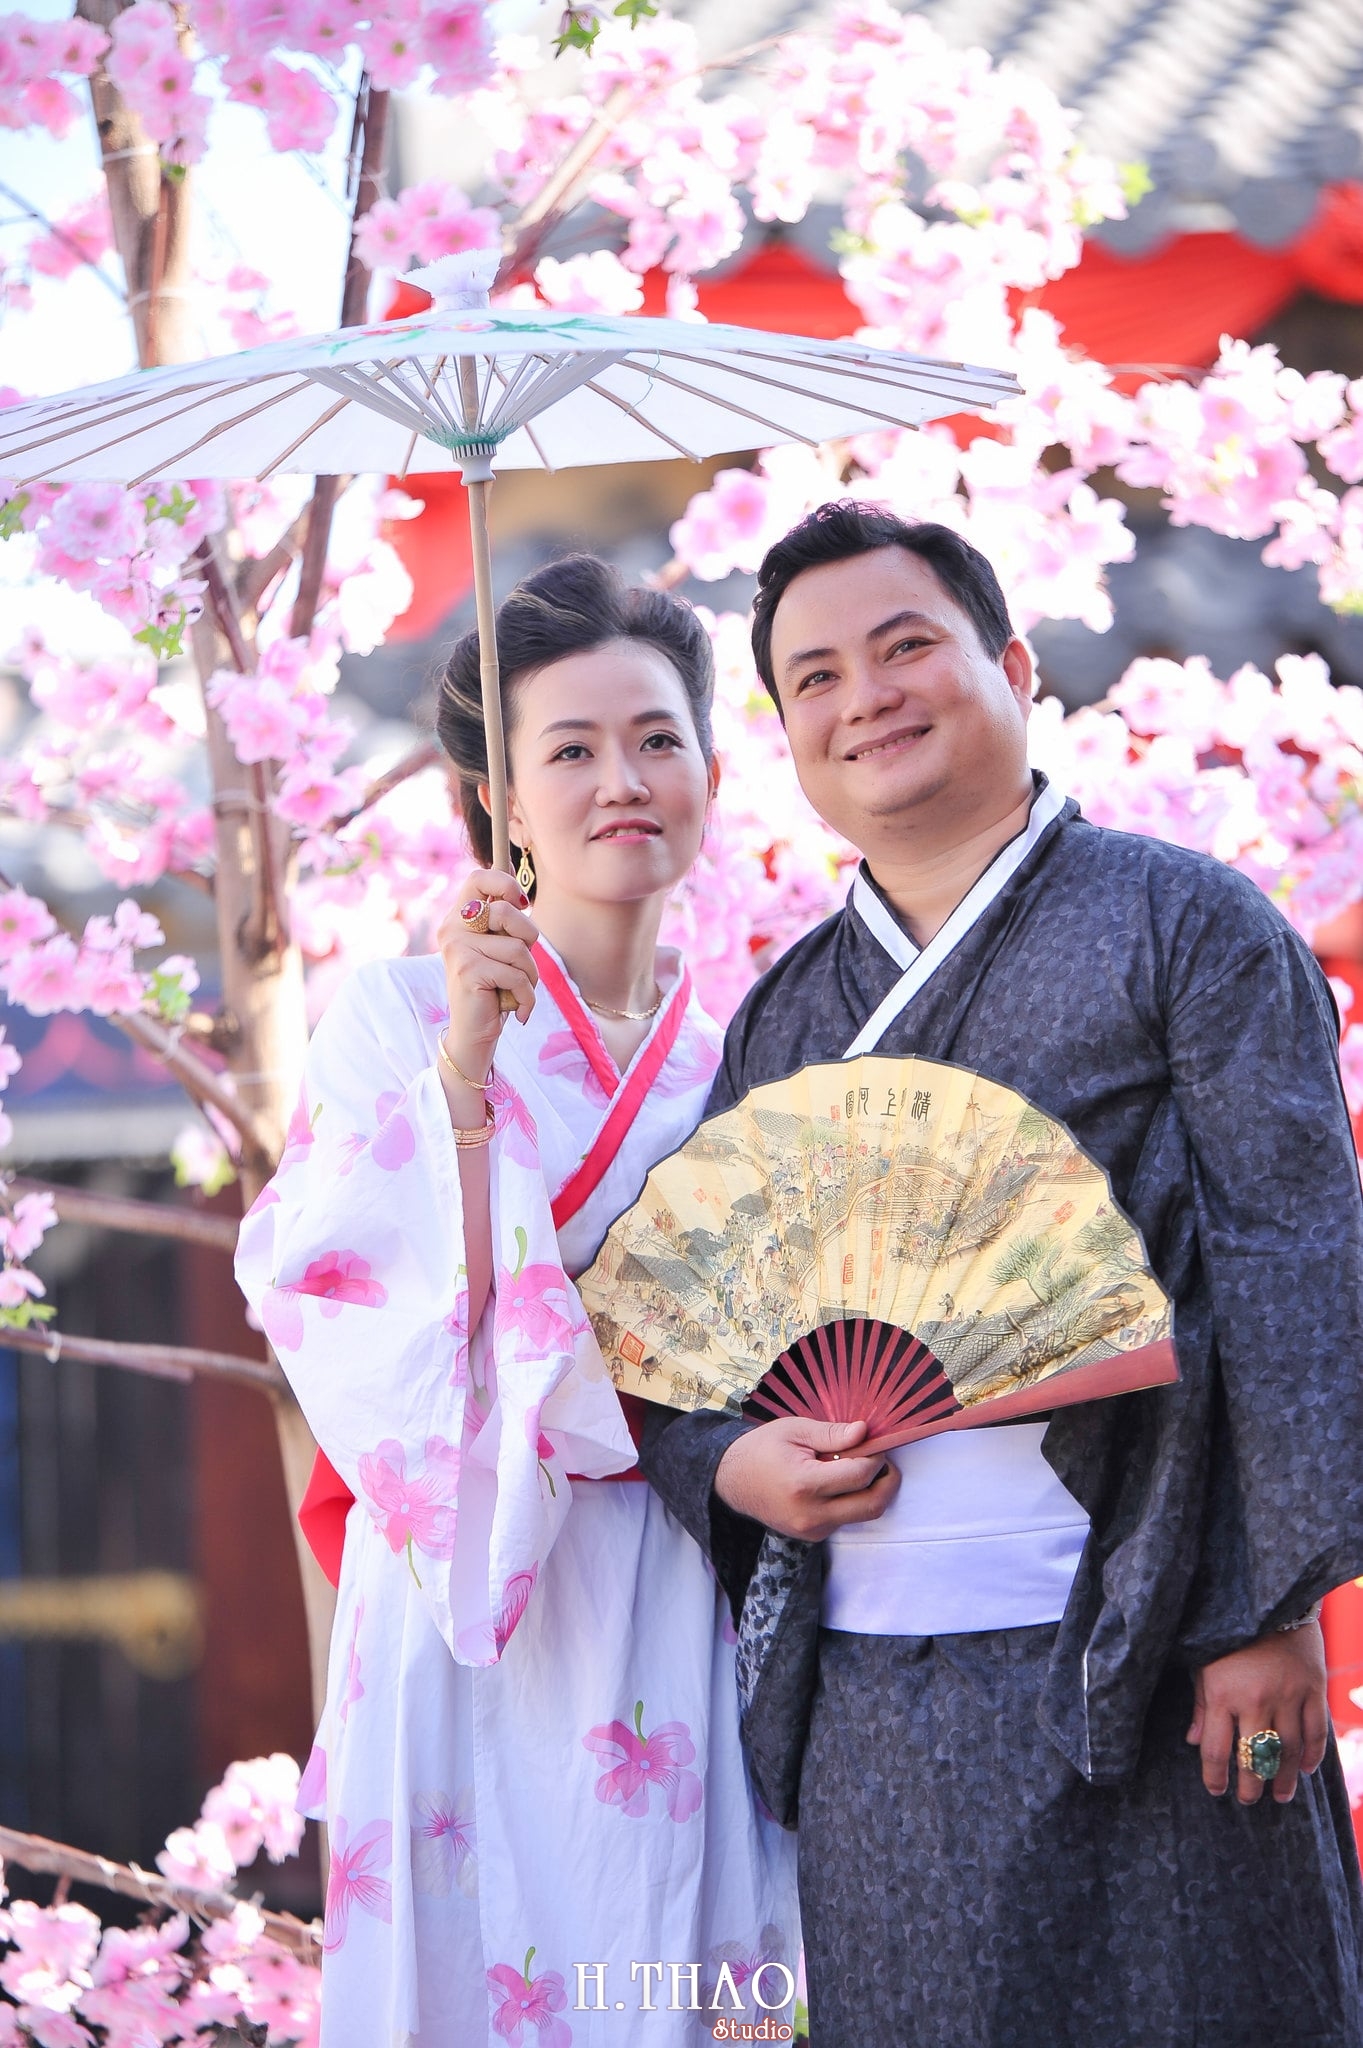 Anh chup voi Kimono 3 - Bộ ảnh couple chụp với Kimono theo phong cách Nhật Bản